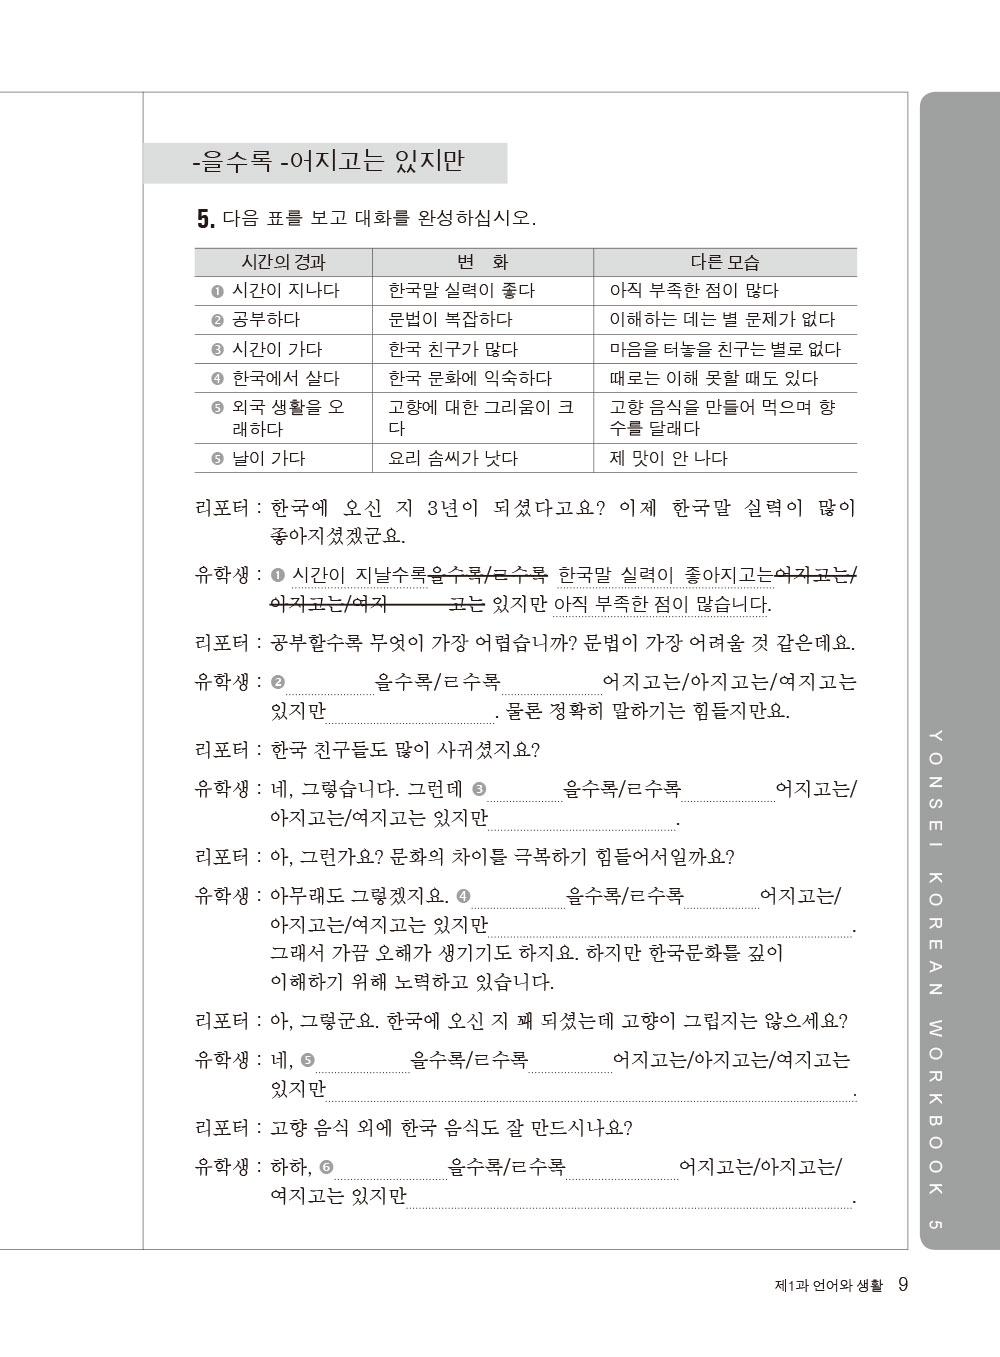 ►語言學習►暢銷書► 最權威的延世大學韓國語練習本5(附MP3 光碟一片)